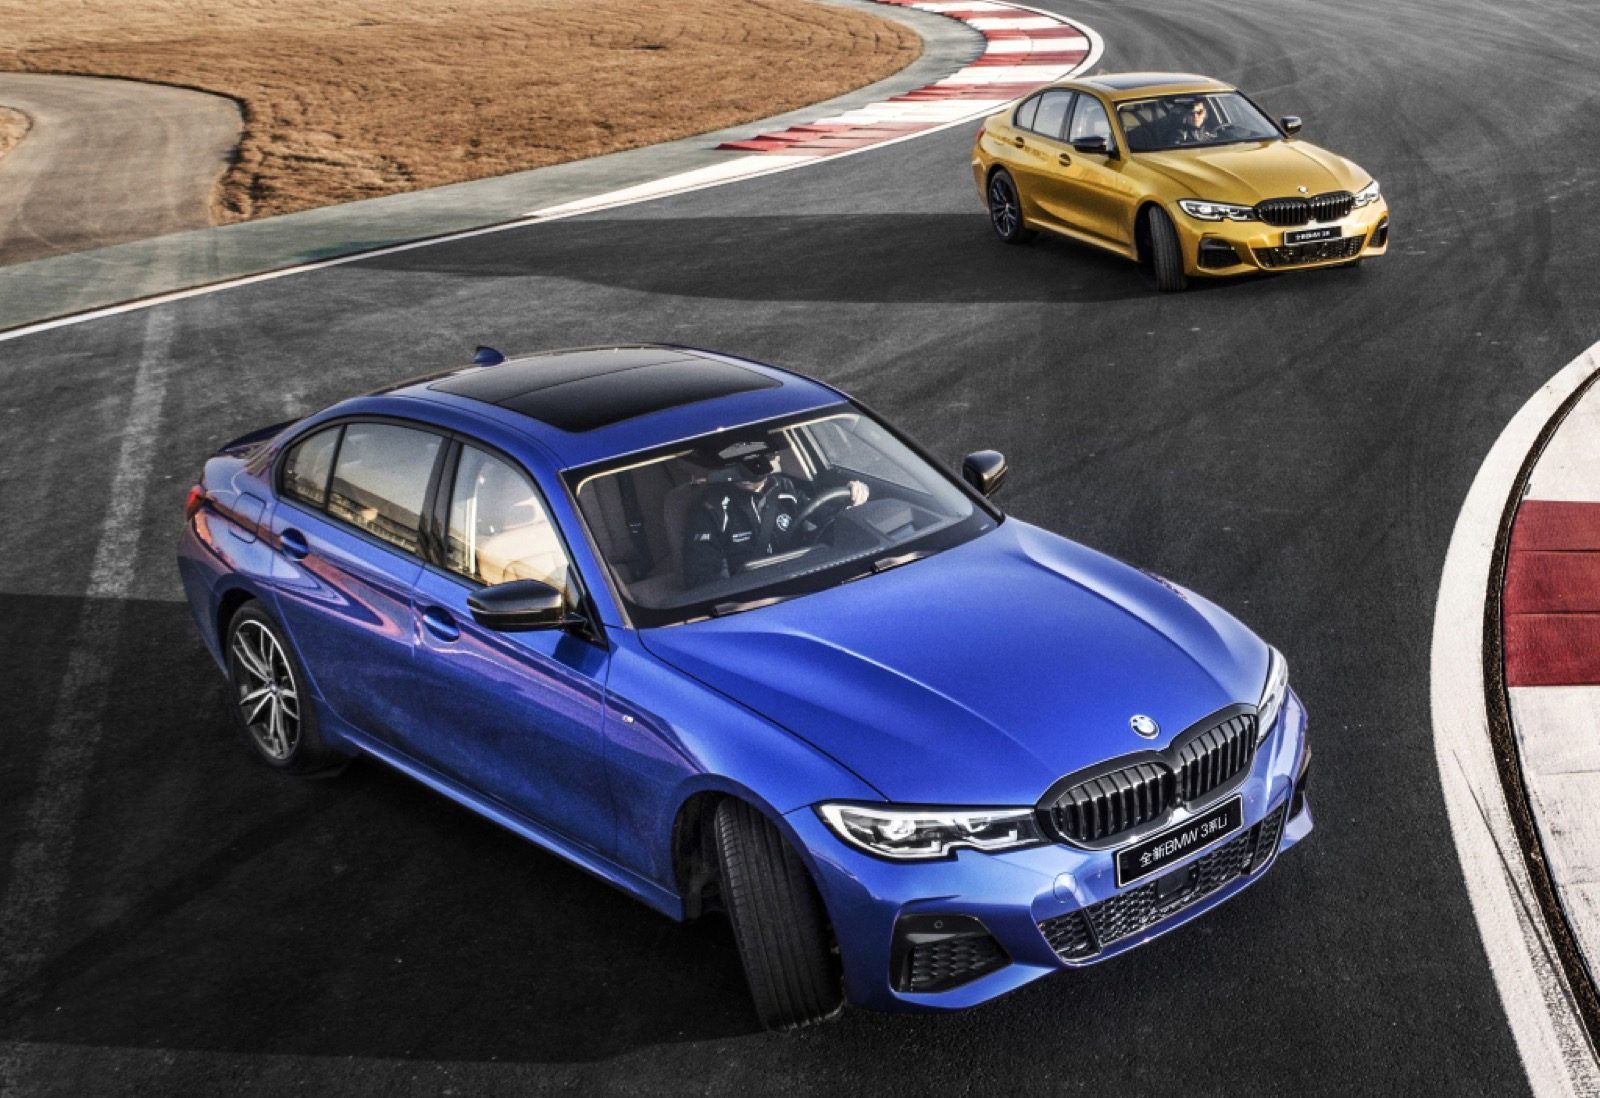 BMW verkoopcijfers 20% onderuit in Q1 2020 - Autoblog.nl